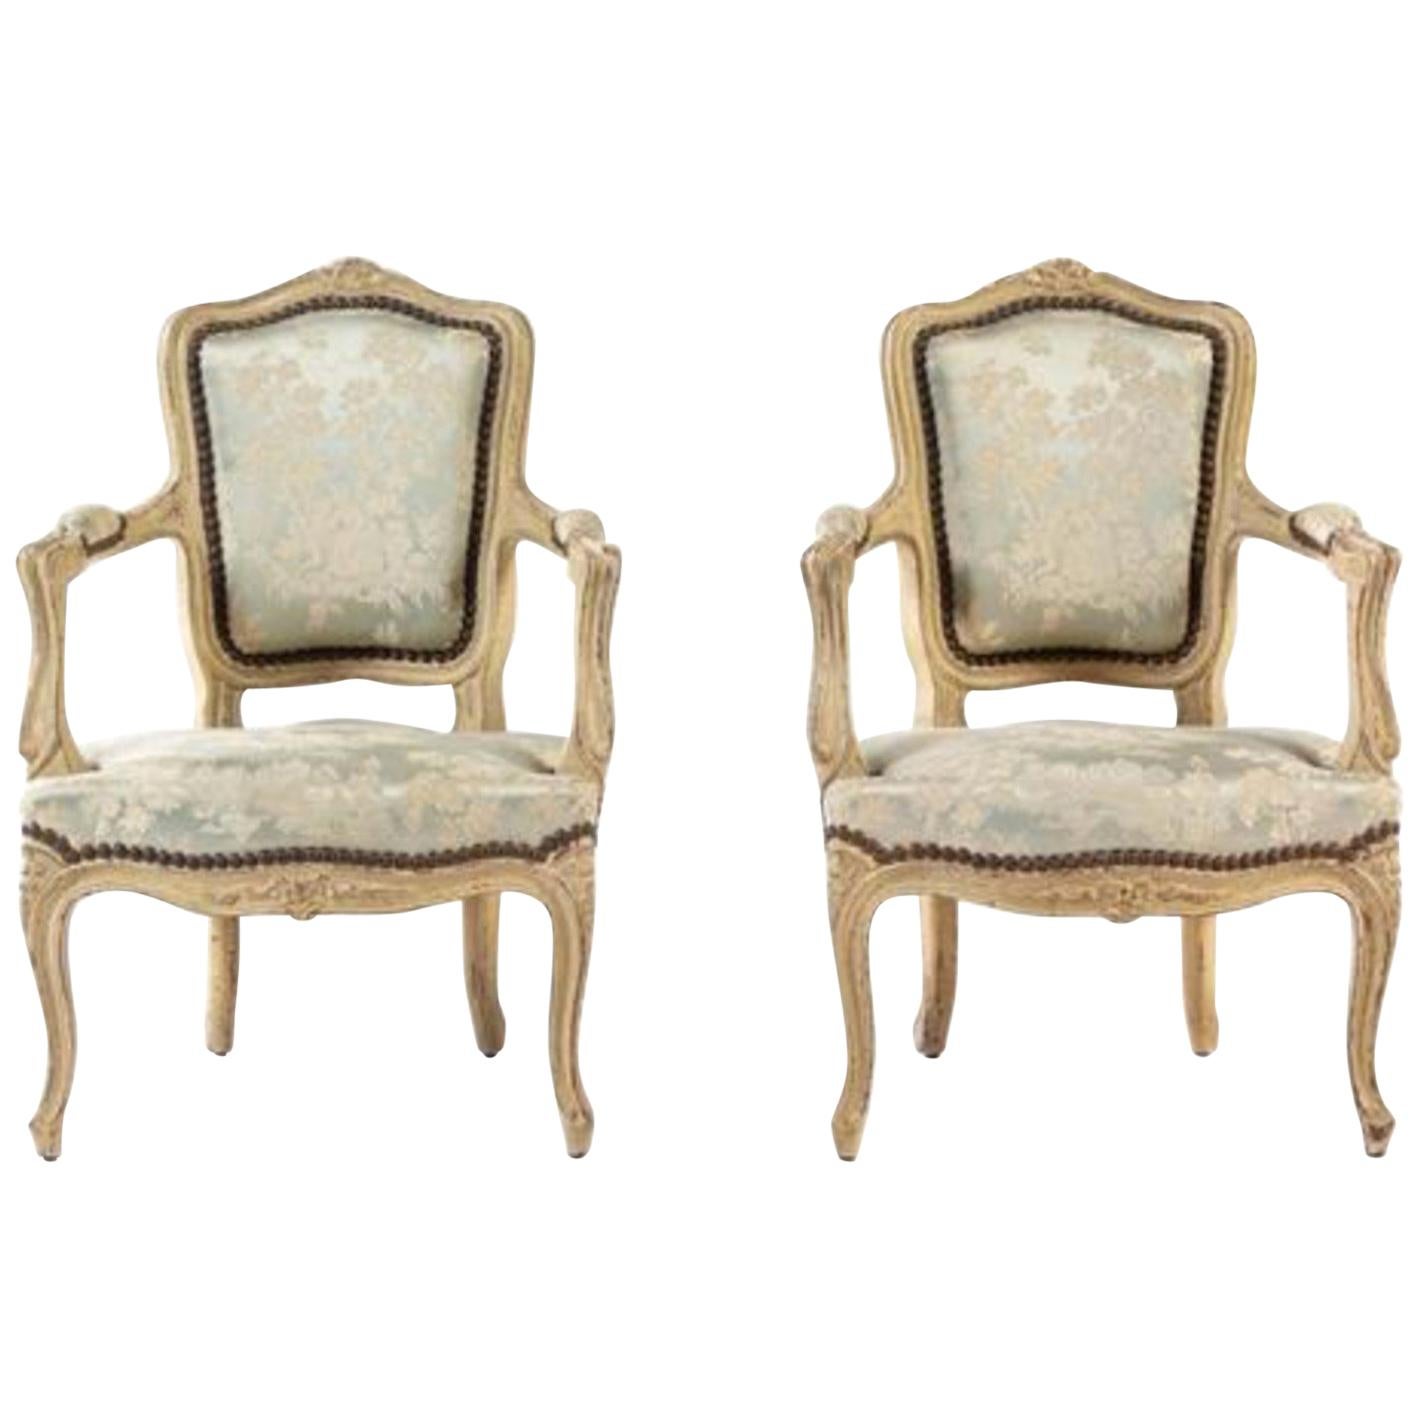 Charmante paire de chaises d'enfant peintes de style Louis XV du 19ème siècle tapissées.